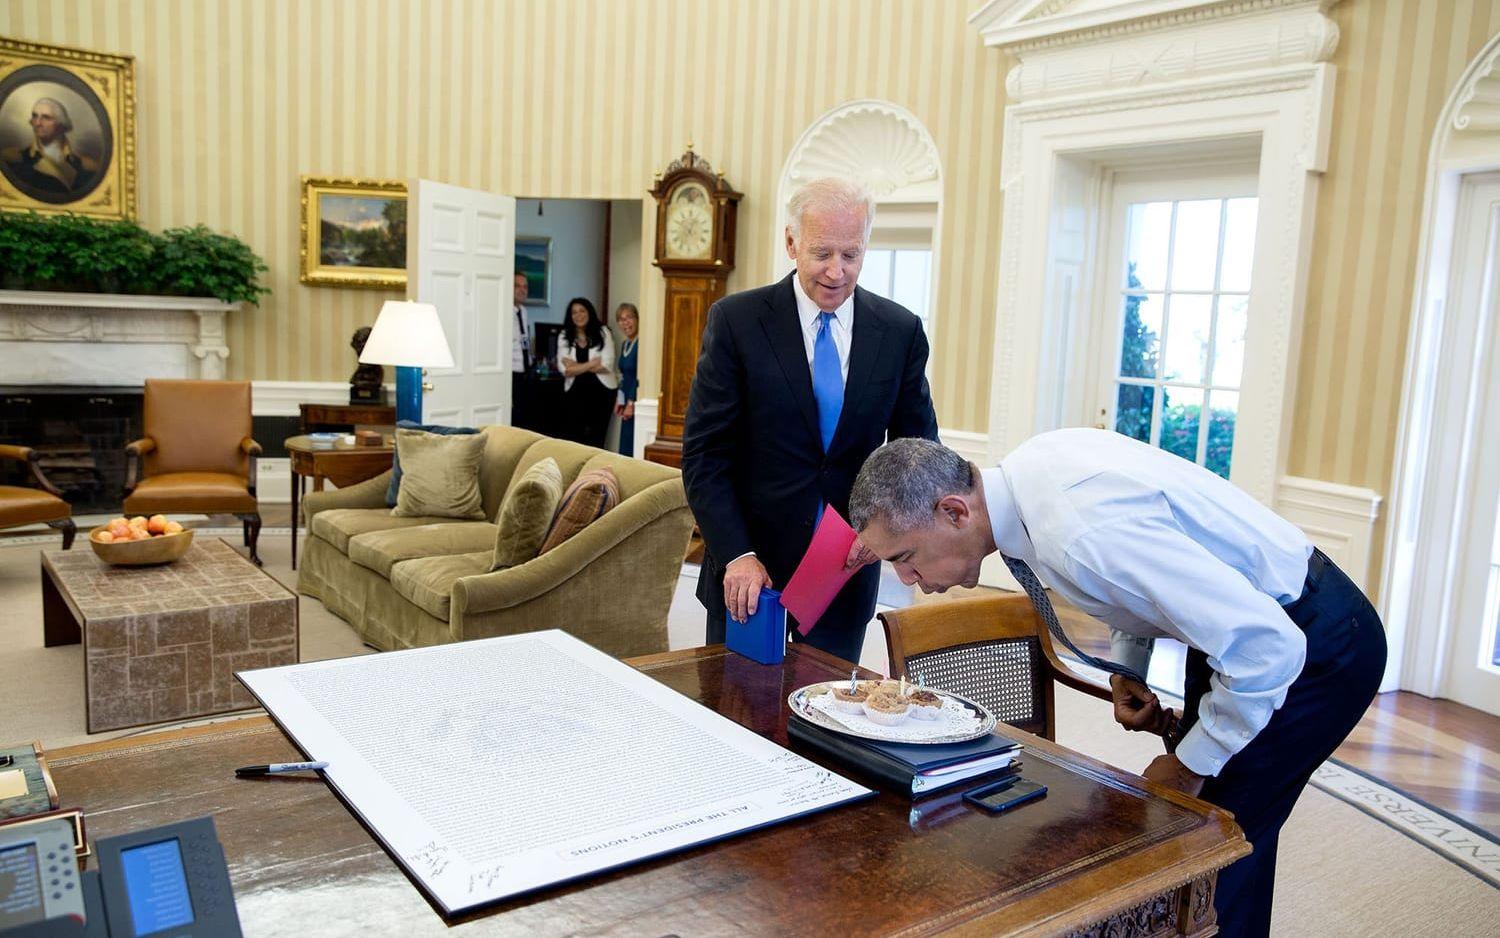 4 augusti, 2016: Vicepresidenten Joe Biden överraskar presidenten med några födelsedags-muffins.